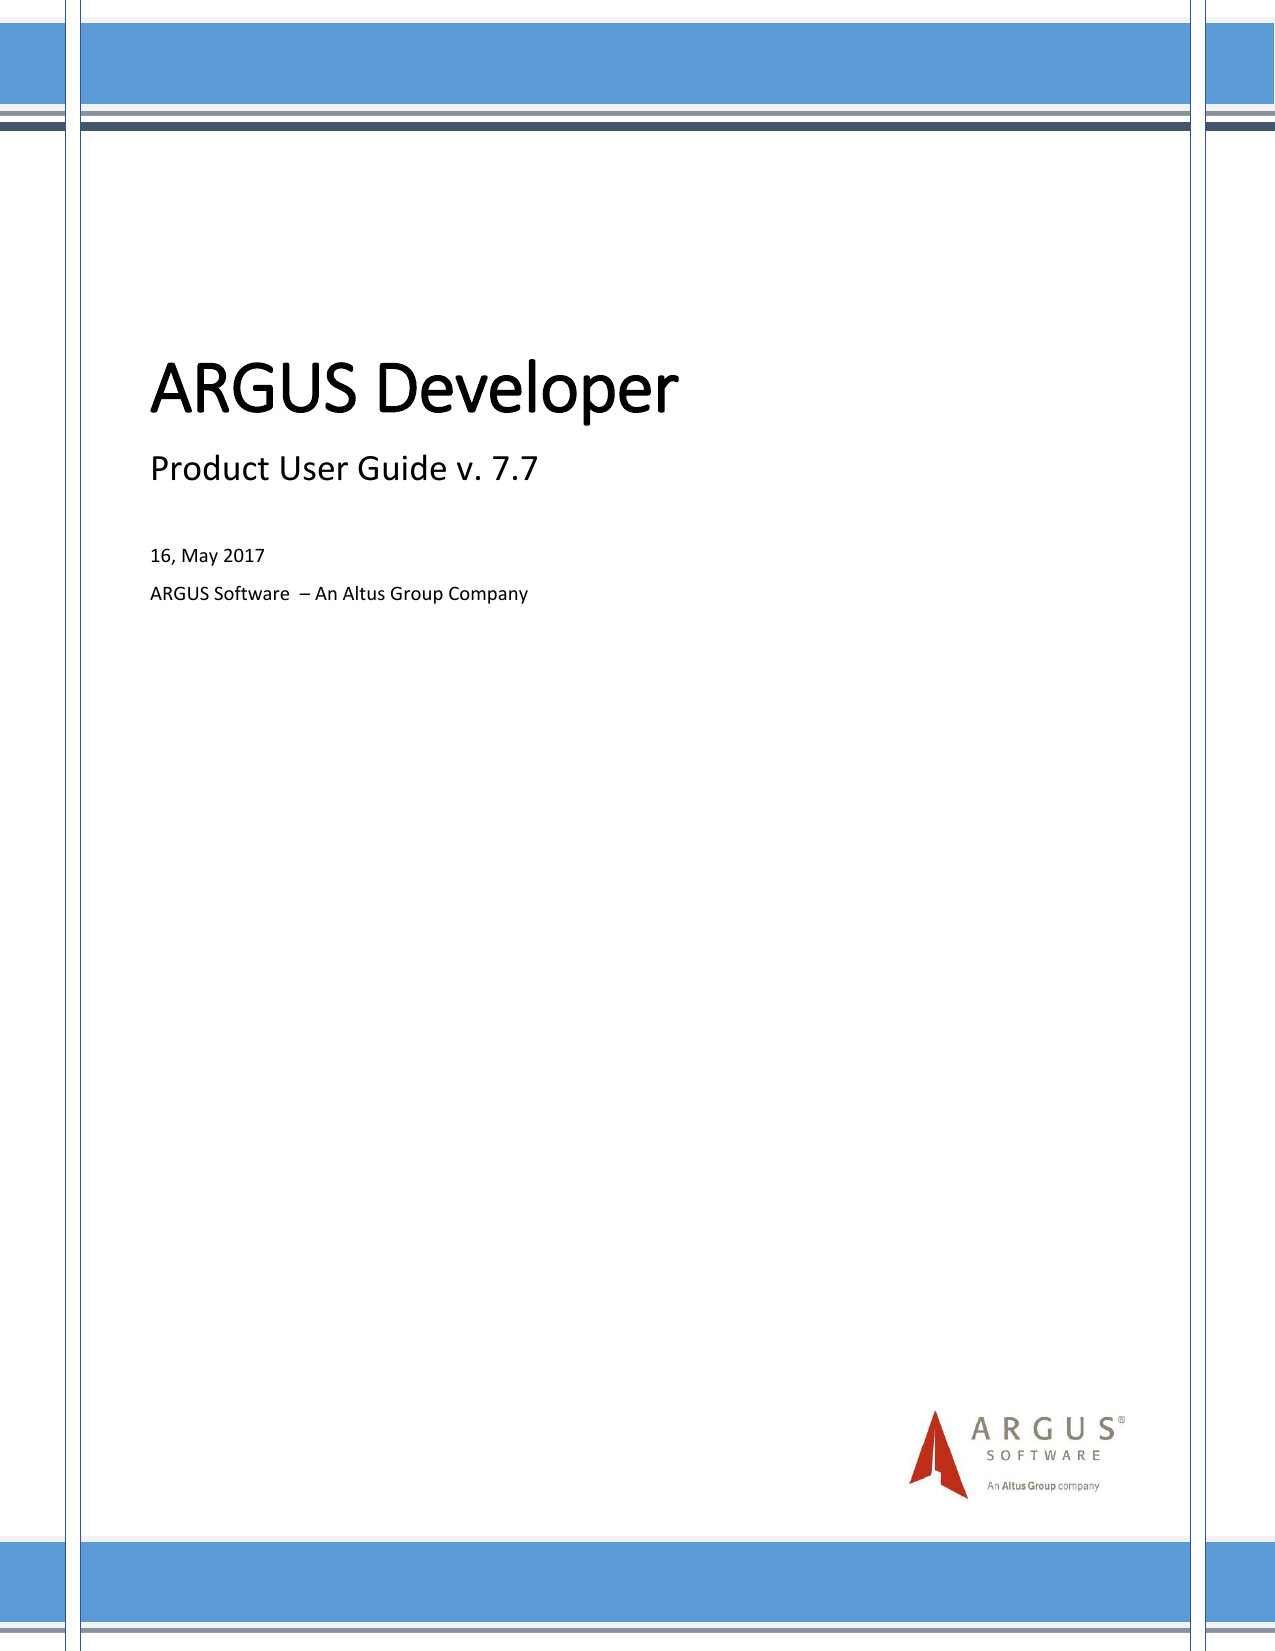 argus developer single family home